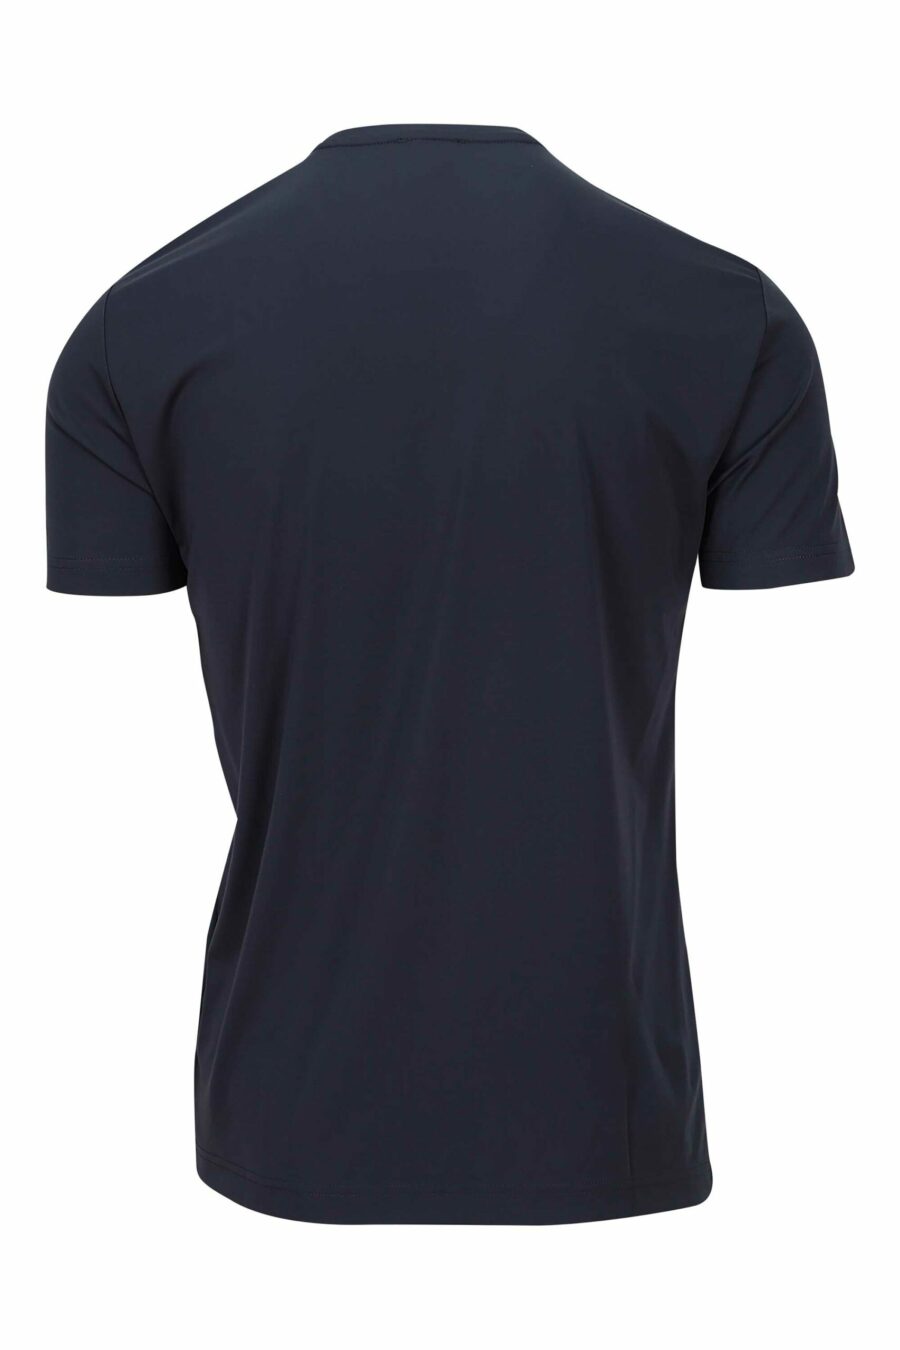 Camiseta azul marino con minilogo escudo "lux identity" - 8057767519964 1 scaled